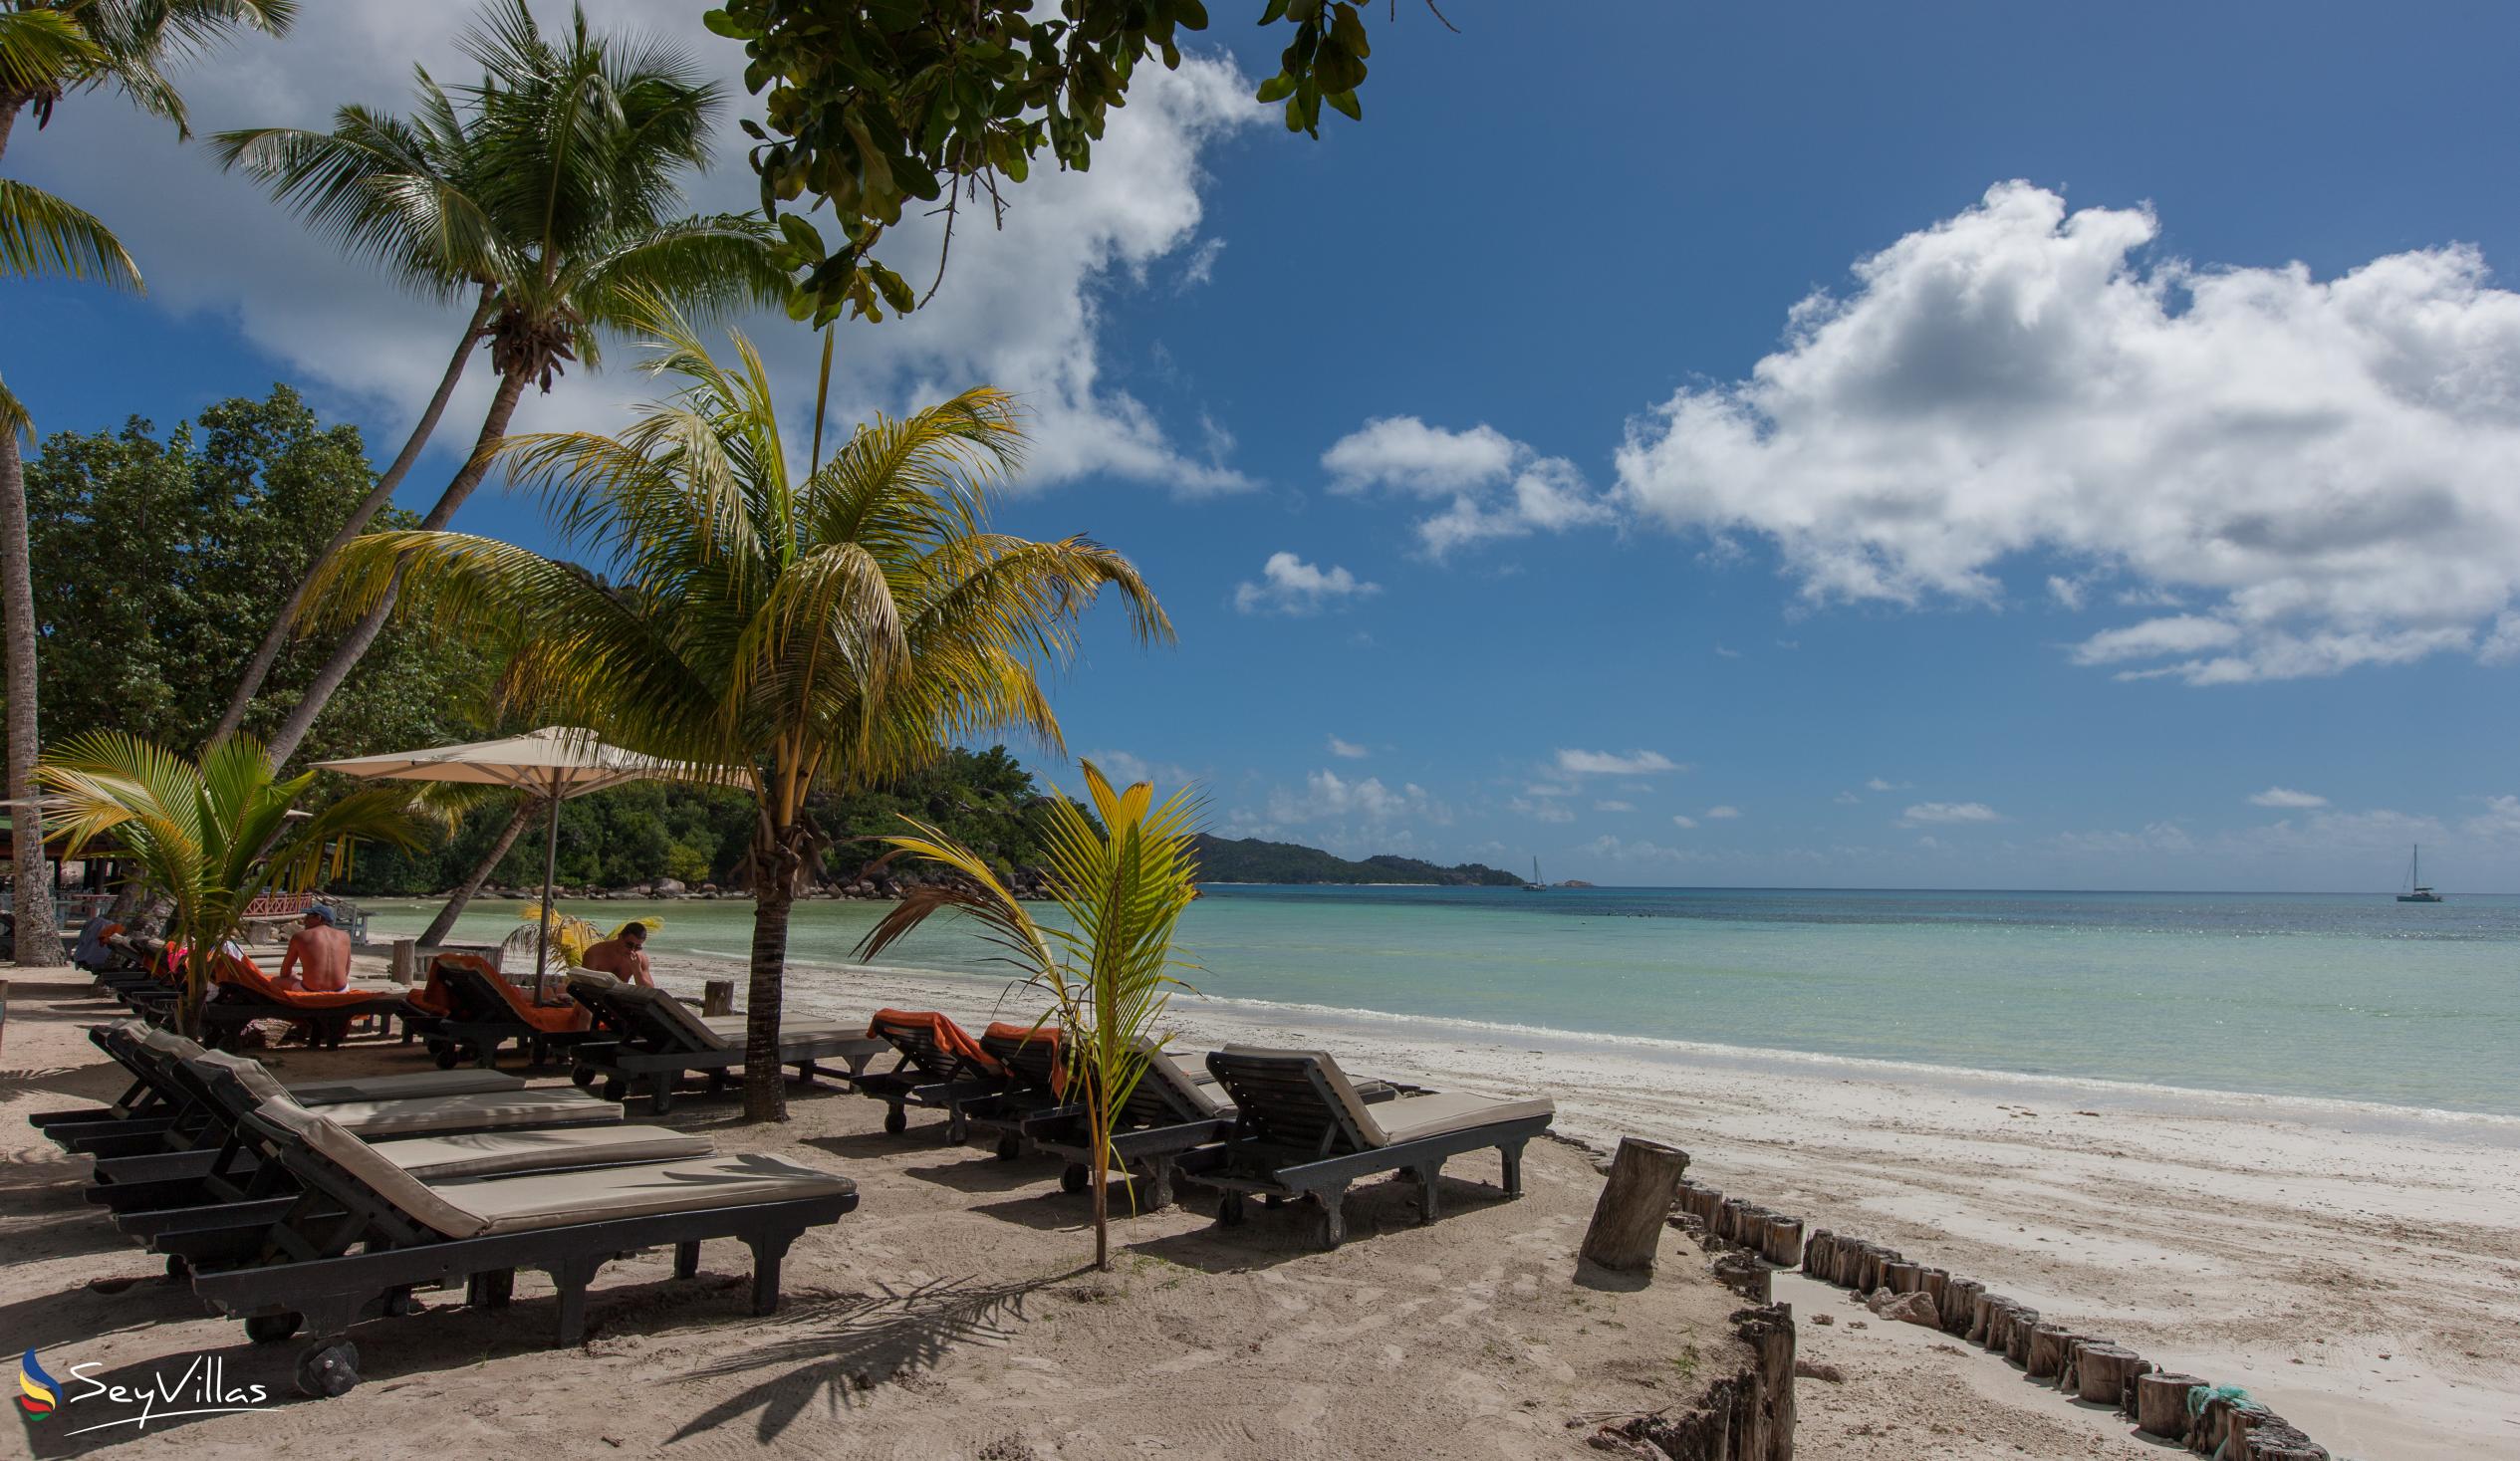 Photo 85: Paradise Sun Hotel - Outdoor area - Praslin (Seychelles)